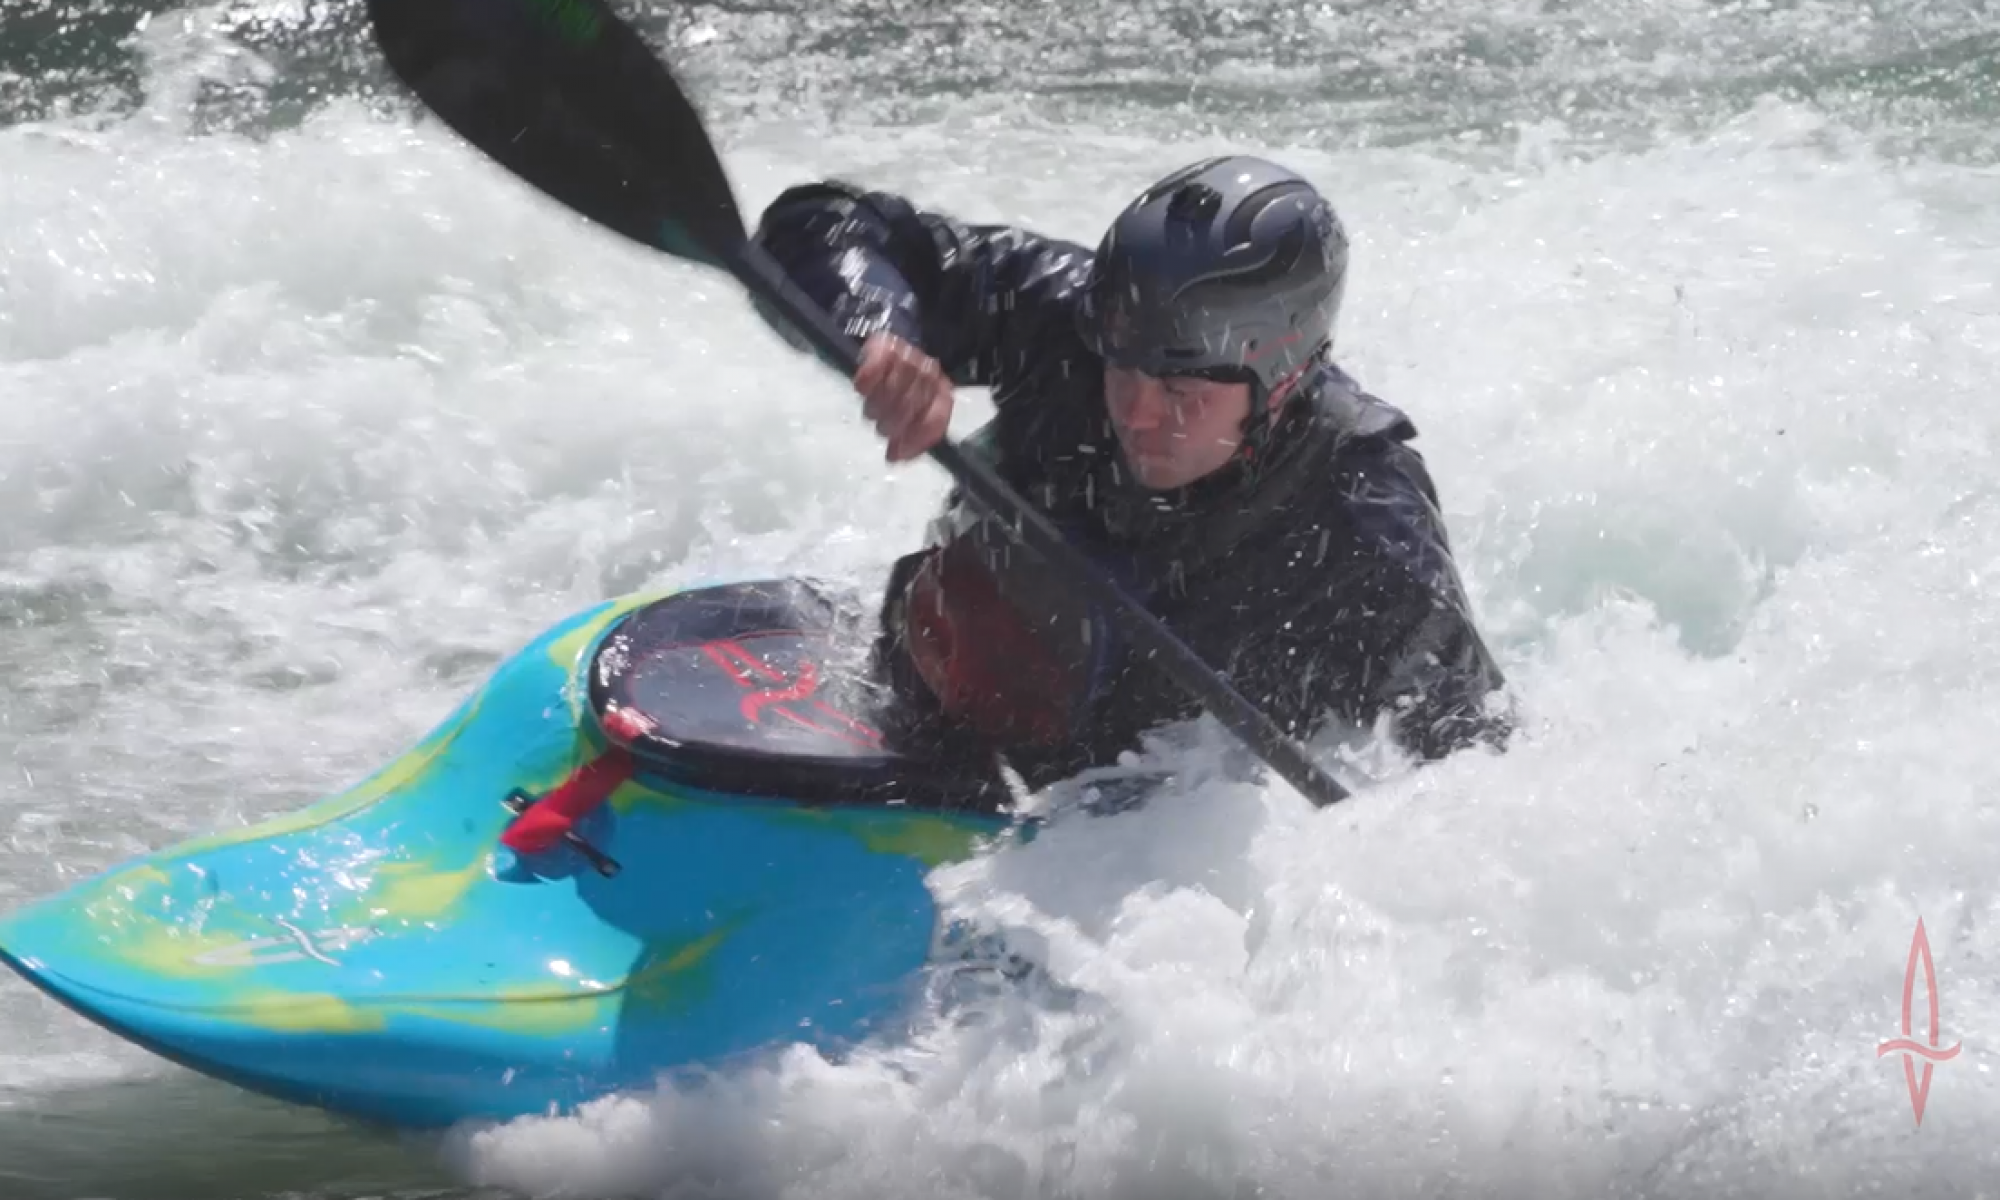 Whitewater kayaker surging down rapid